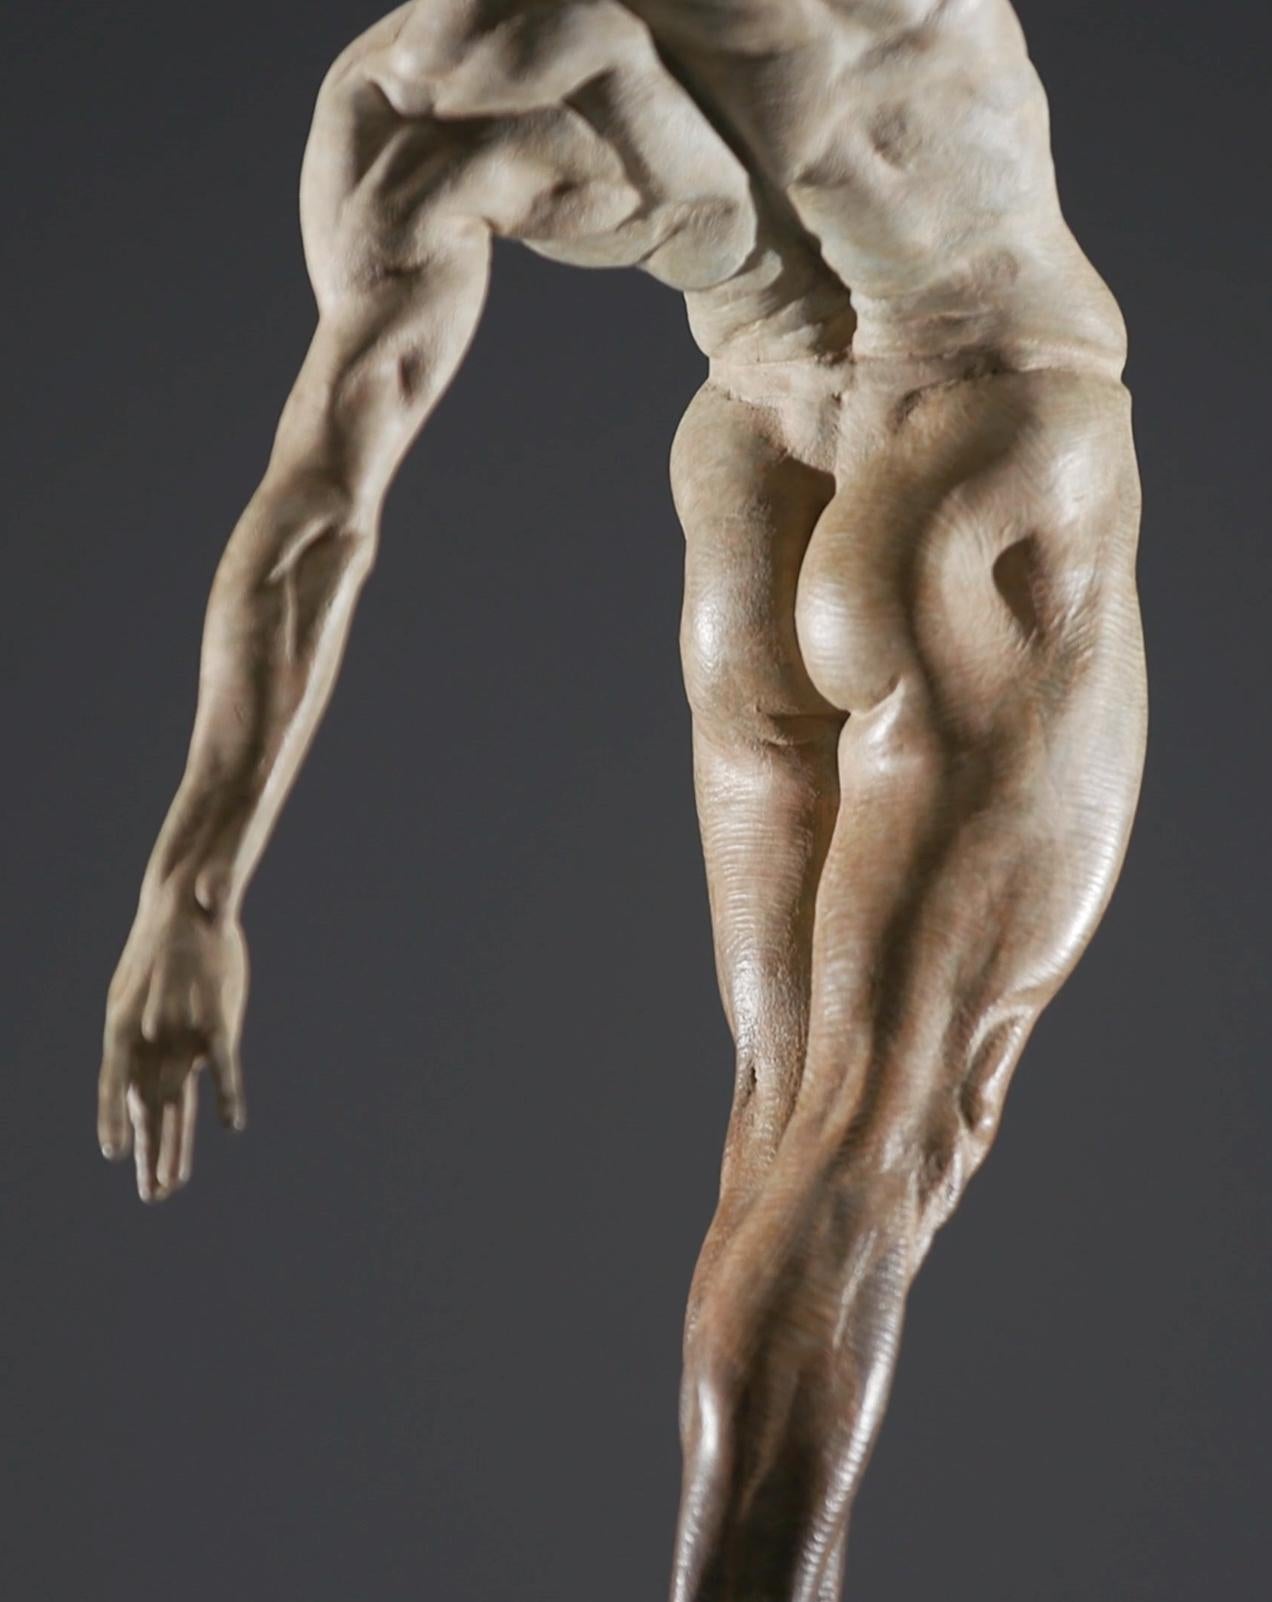 Richard MacDonald hat in seinem Werk mit dem Titel Allongé - verlängern oder strecken - die kraftvollen Linien des männlichen Tänzers modelliert und die anmutige Form seines Körpers hervorgehoben. In Zusammenarbeit mit den Solotänzern des Royal